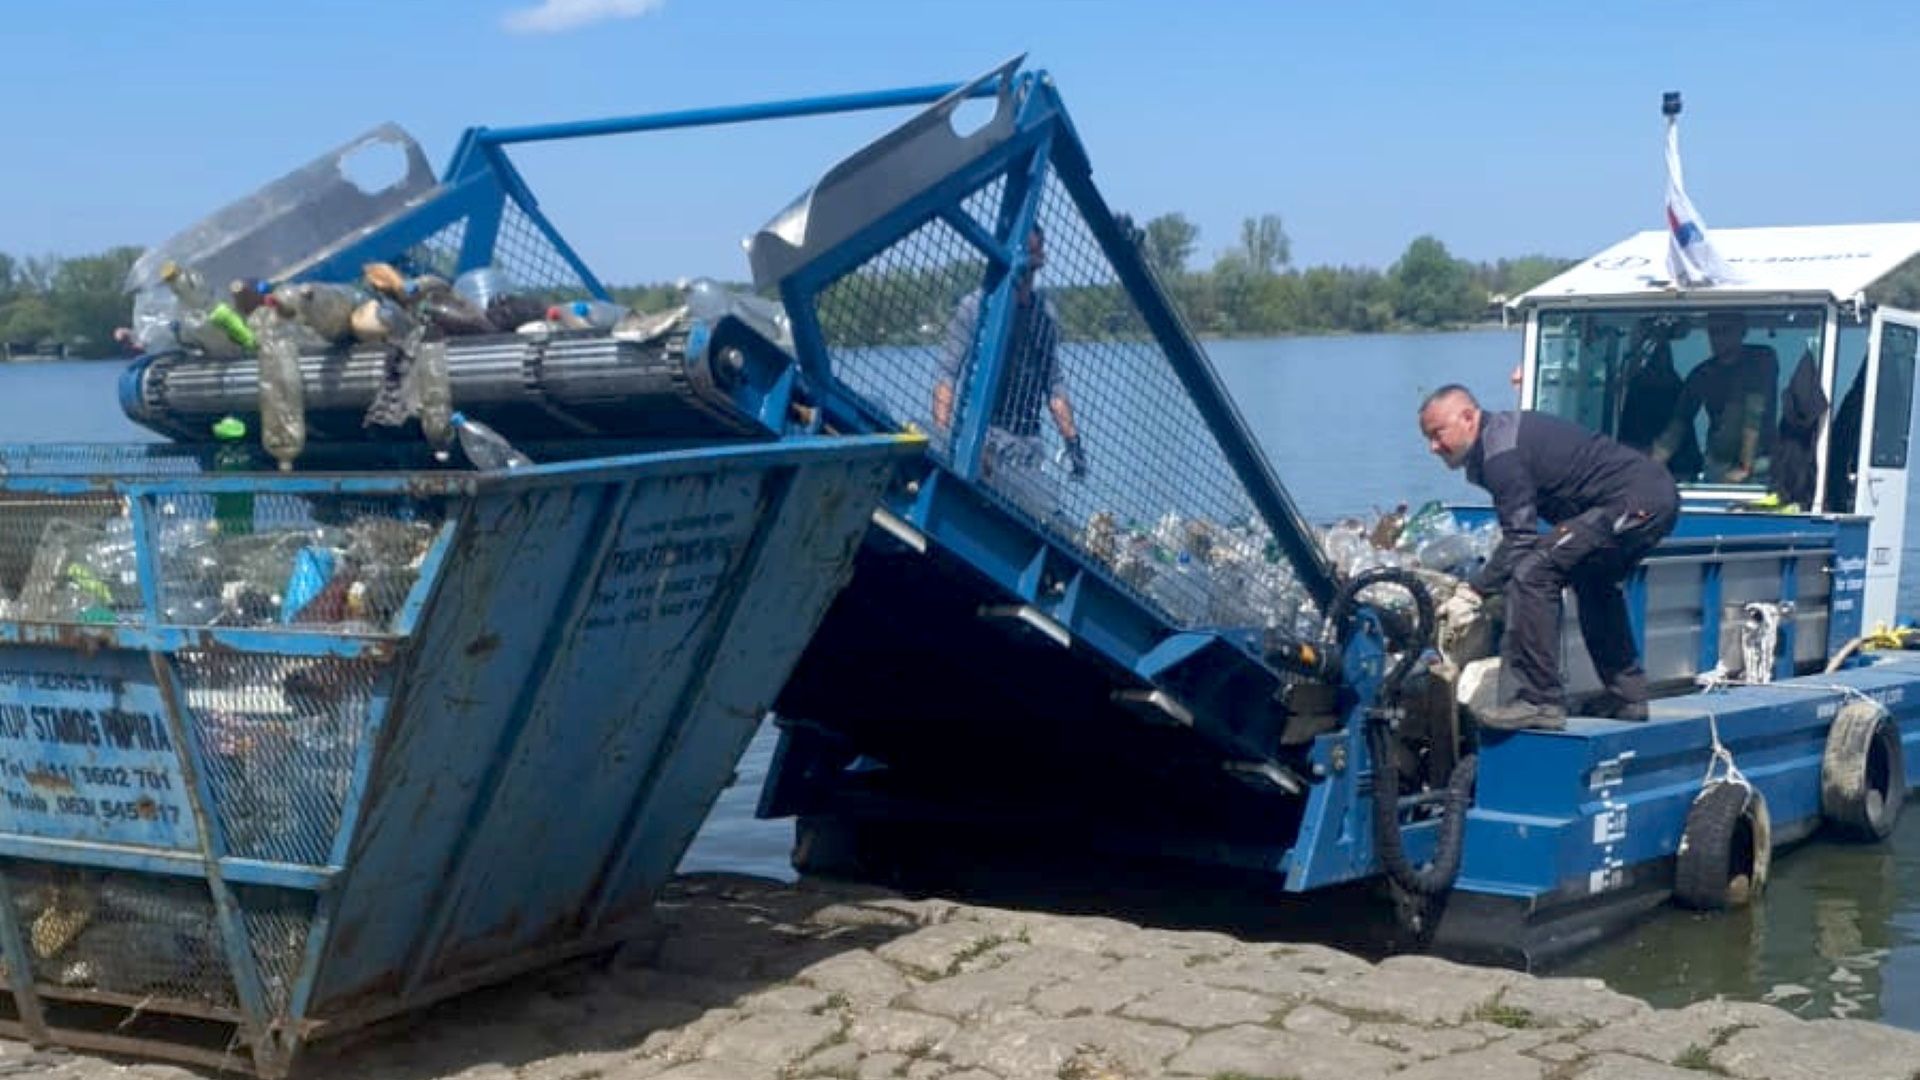 05. Mai 2021 | Ende der Mission | Heute endet die Mission des Müllsammel-Boots in Serbien. Der Einsatz hat sich gelohnt! Über drei Tonnen reines Plastik konnten aus dem Wasser geholt werden. Und nicht nur Müll wurde gesammelt, auch wichtige Daten über die Zusammensetzung der Müllteppiche, aus denen sich wertvolle Rückschlüsse über die Ursachen der Verschmutzung ziehen lassen. Vielen Dank an unsere Kooperationspartner vor Ort, die Umwelt-NGO Udruzenje 3e, die Universität Belgrad und lokale Unternehmen, die uns mit Kränen, Containern und beim Recycling tatkräftig unterstützten. 